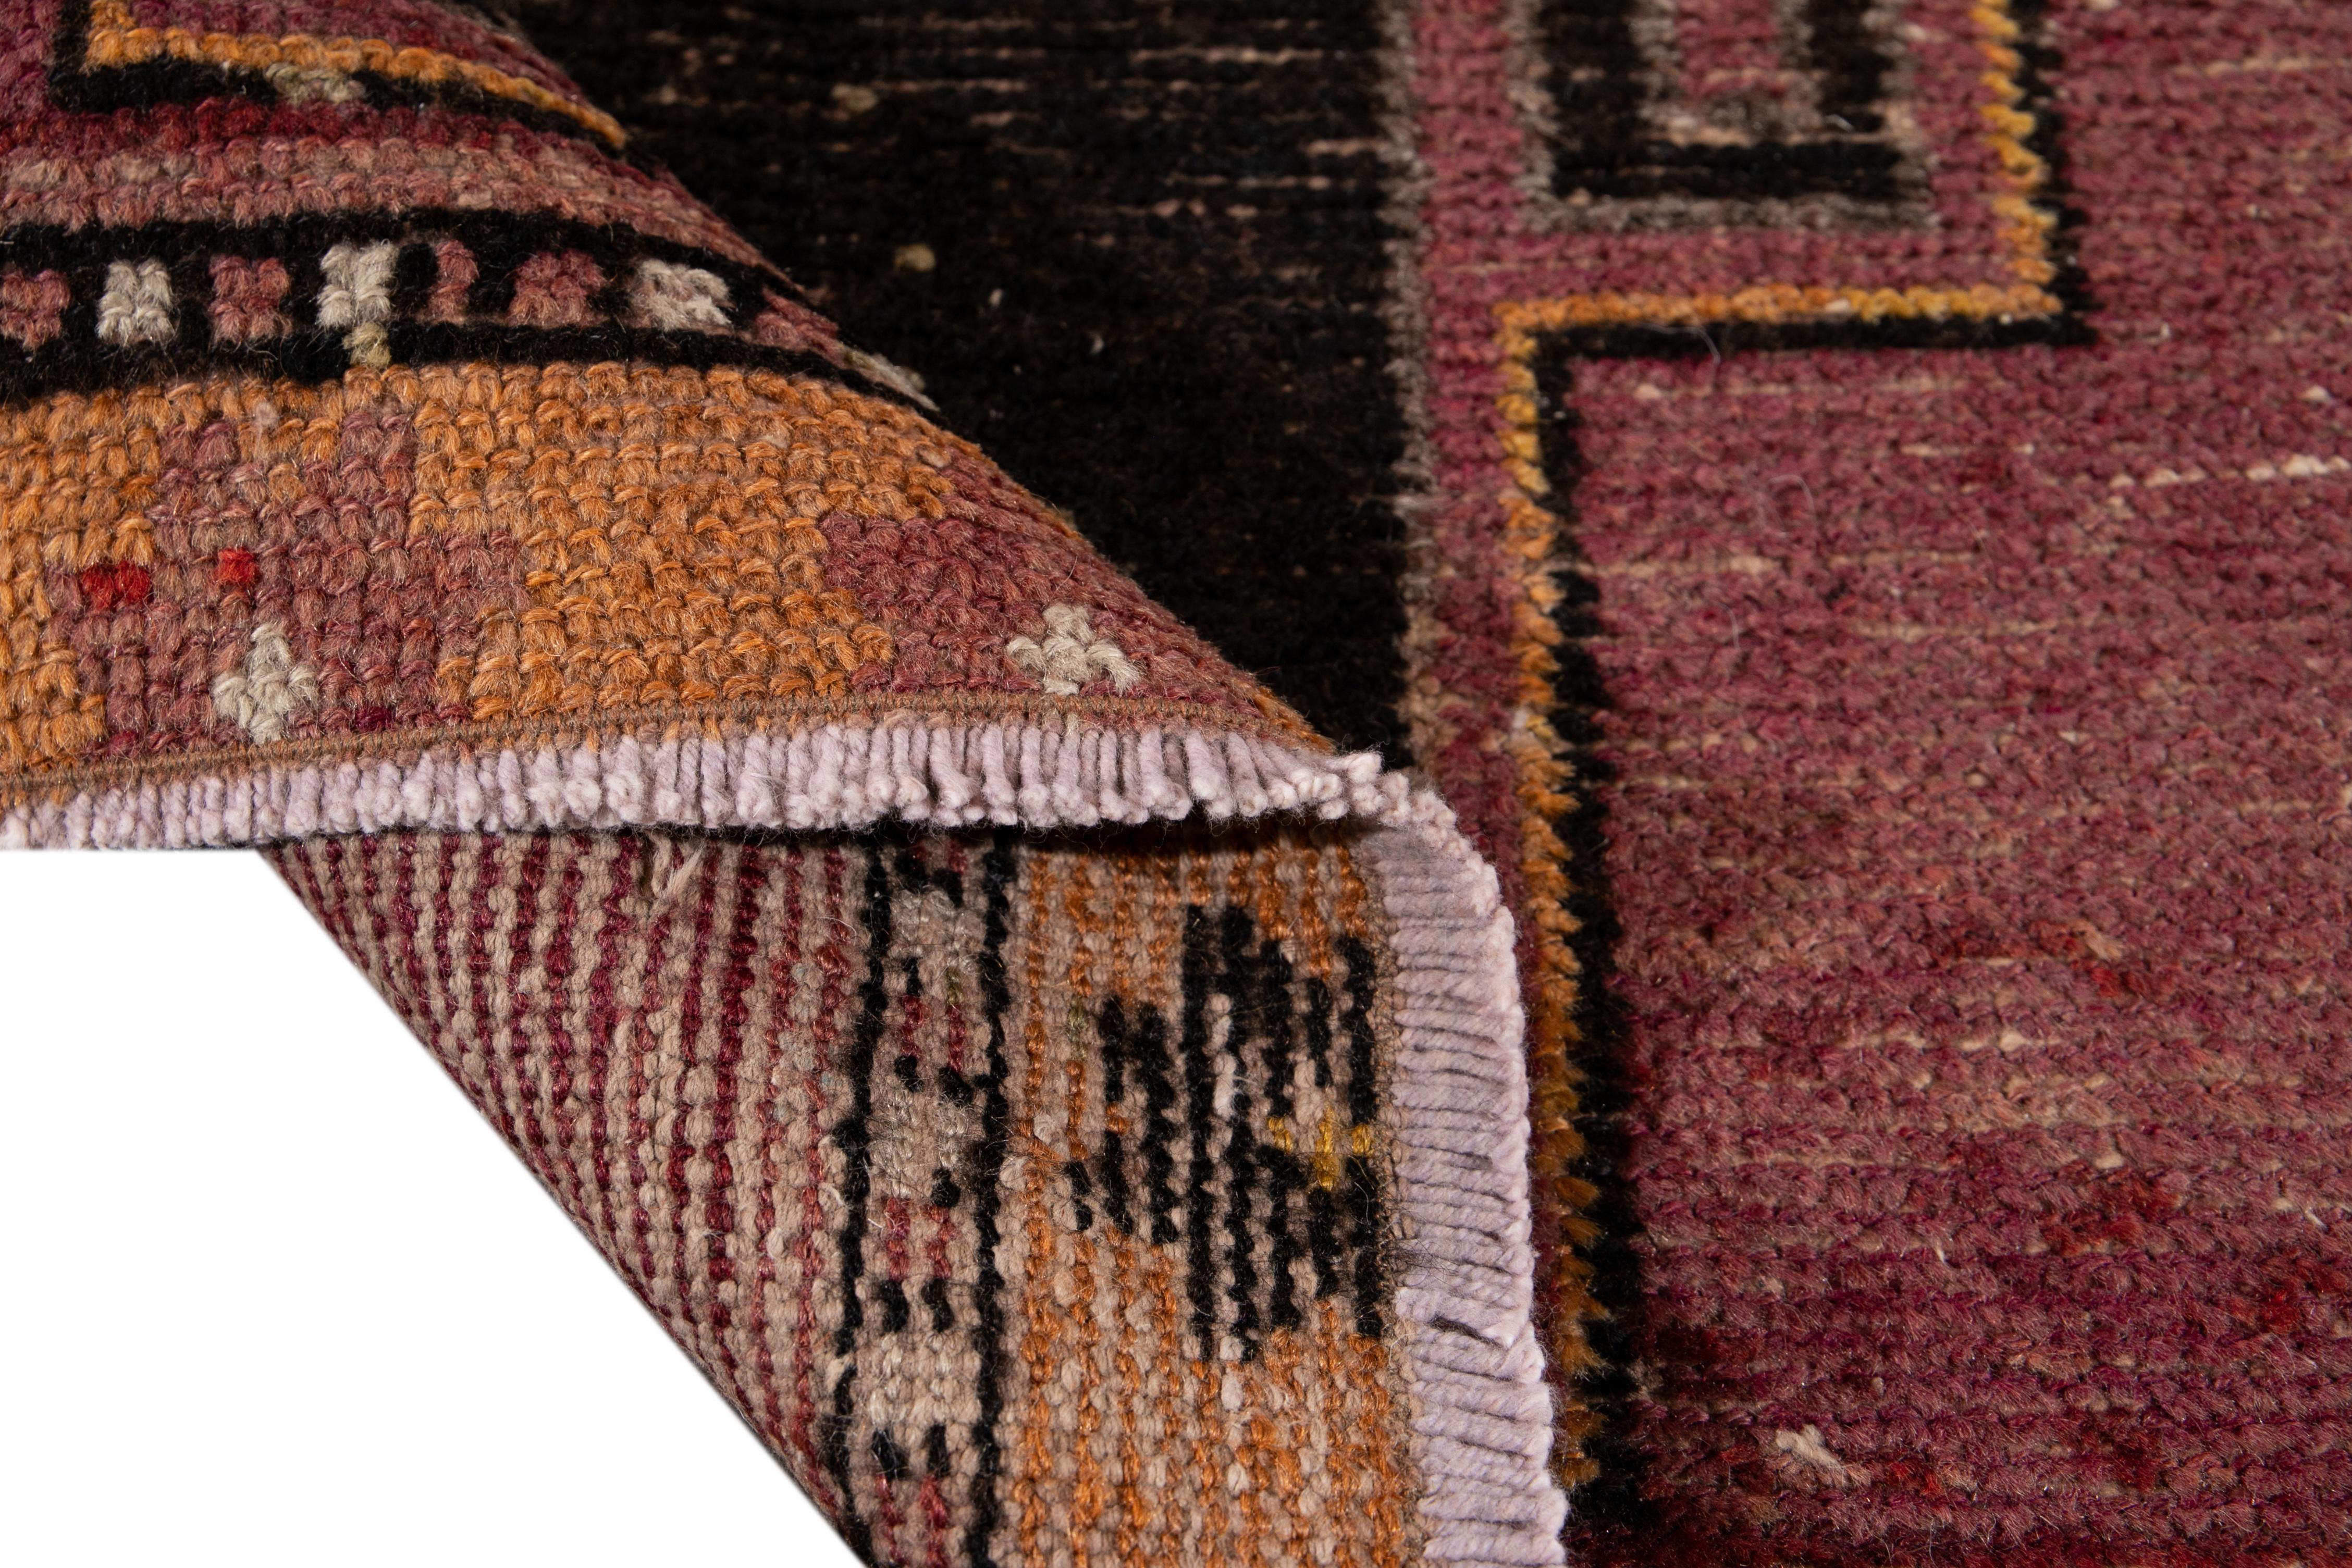 Schöner türkischer handgeknüpfter Wollteppich mit burgunderrotem Feld. Dieser Teppich hat Akzente in Schwarz, Orange und Braun in einem wunderschönen geometrischen Tribal-Muster,

Dieser Teppich misst: 3' x 9'2